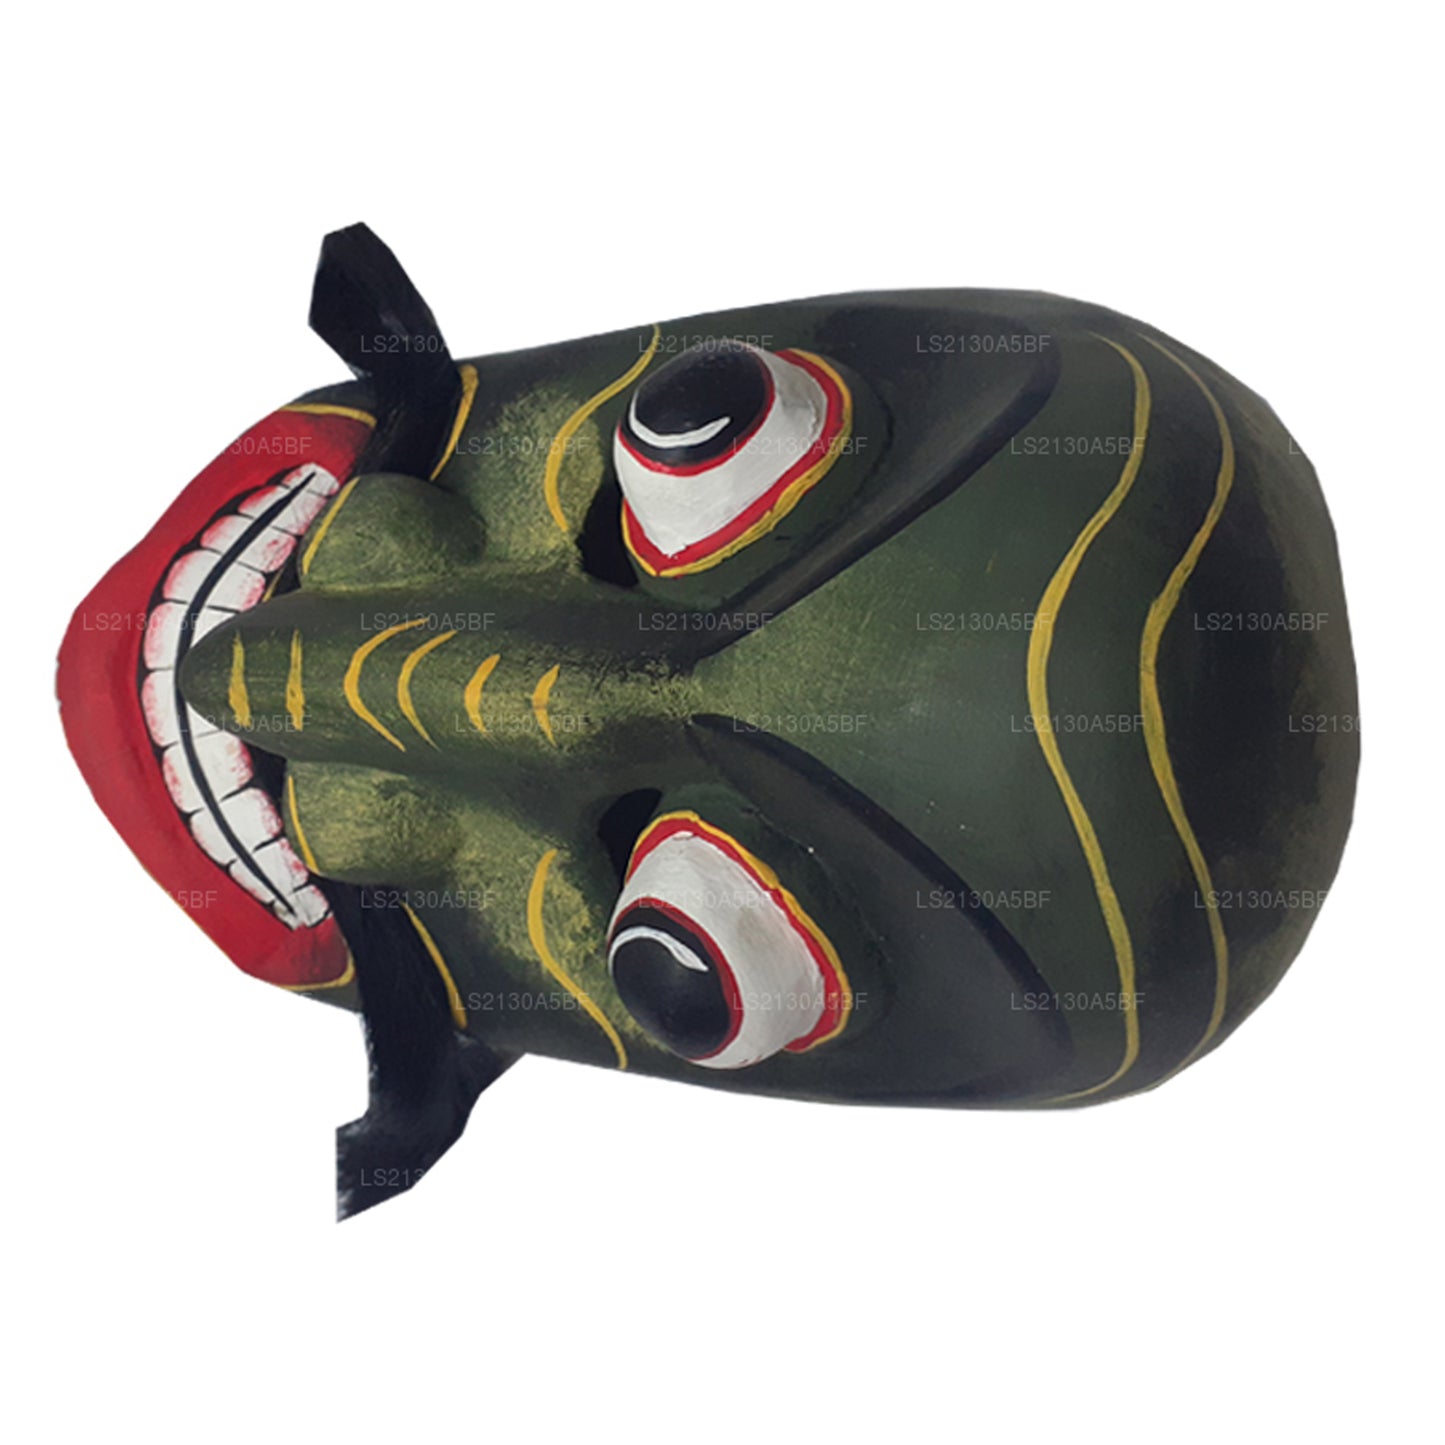 Murthu Sanniya Mask